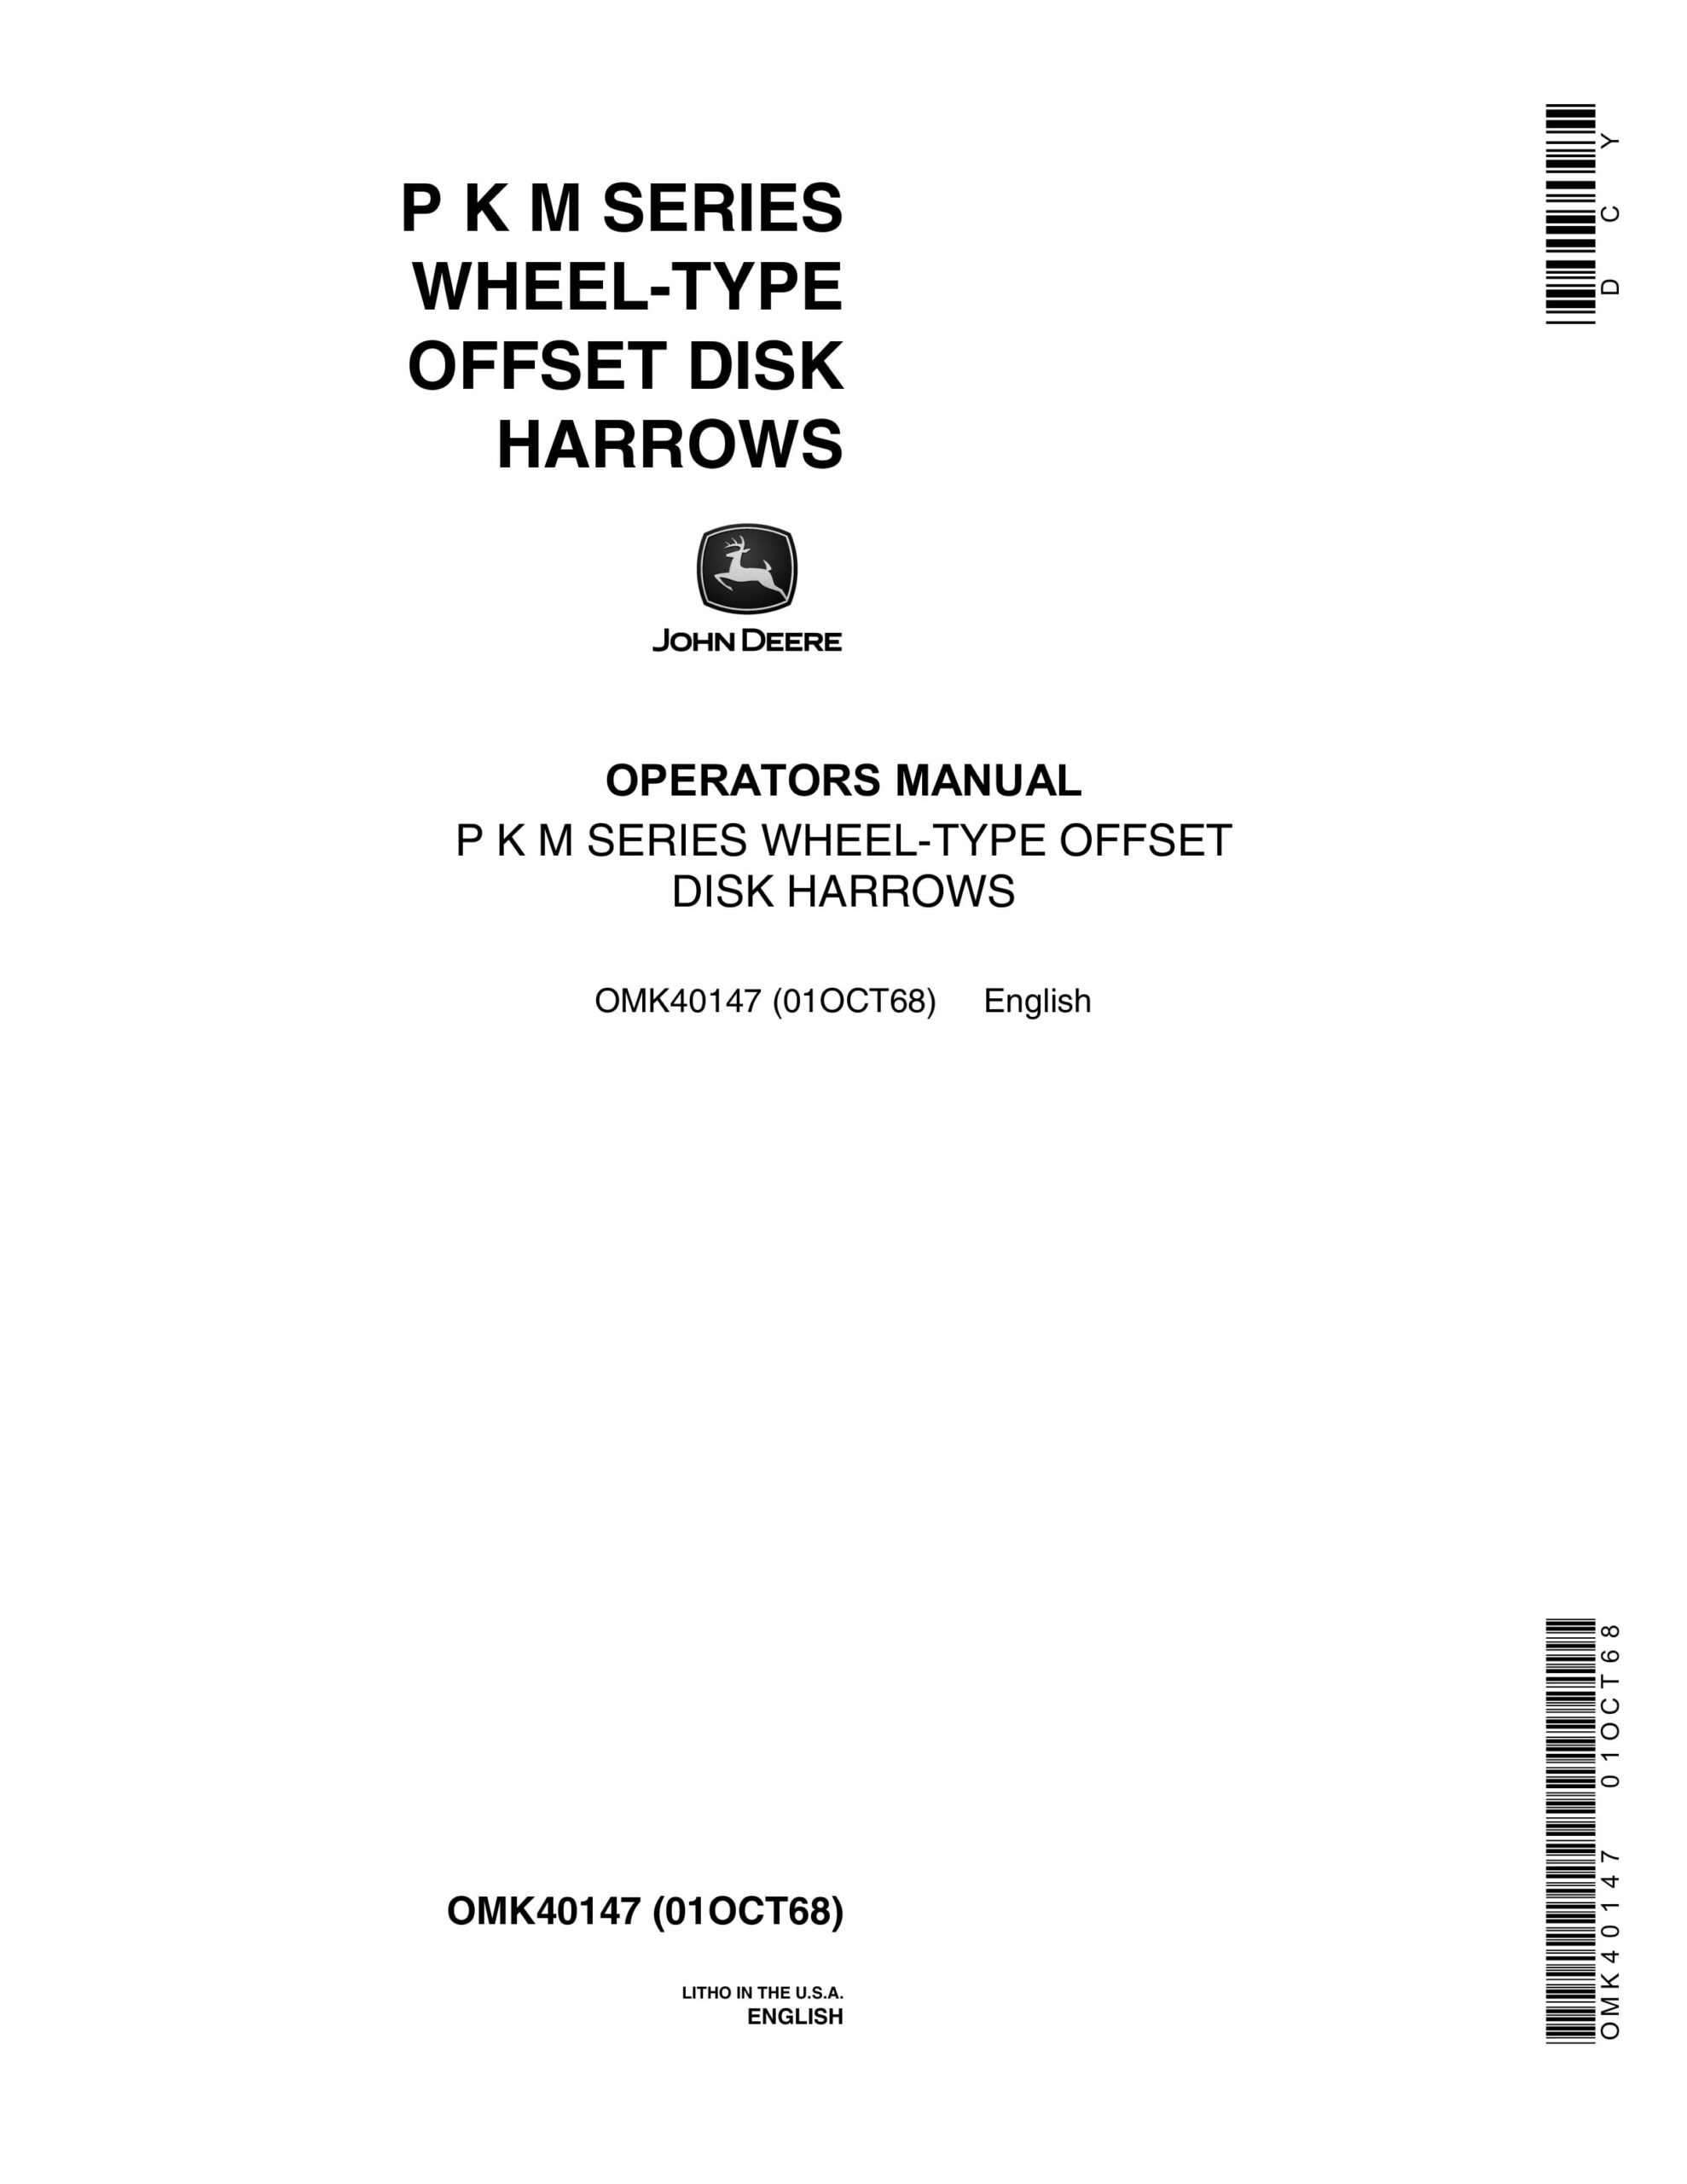 John Deere P K M SERIES WHEEL-TYPE OFFSET DISK HARROWS Operator Manual OMK40147-1